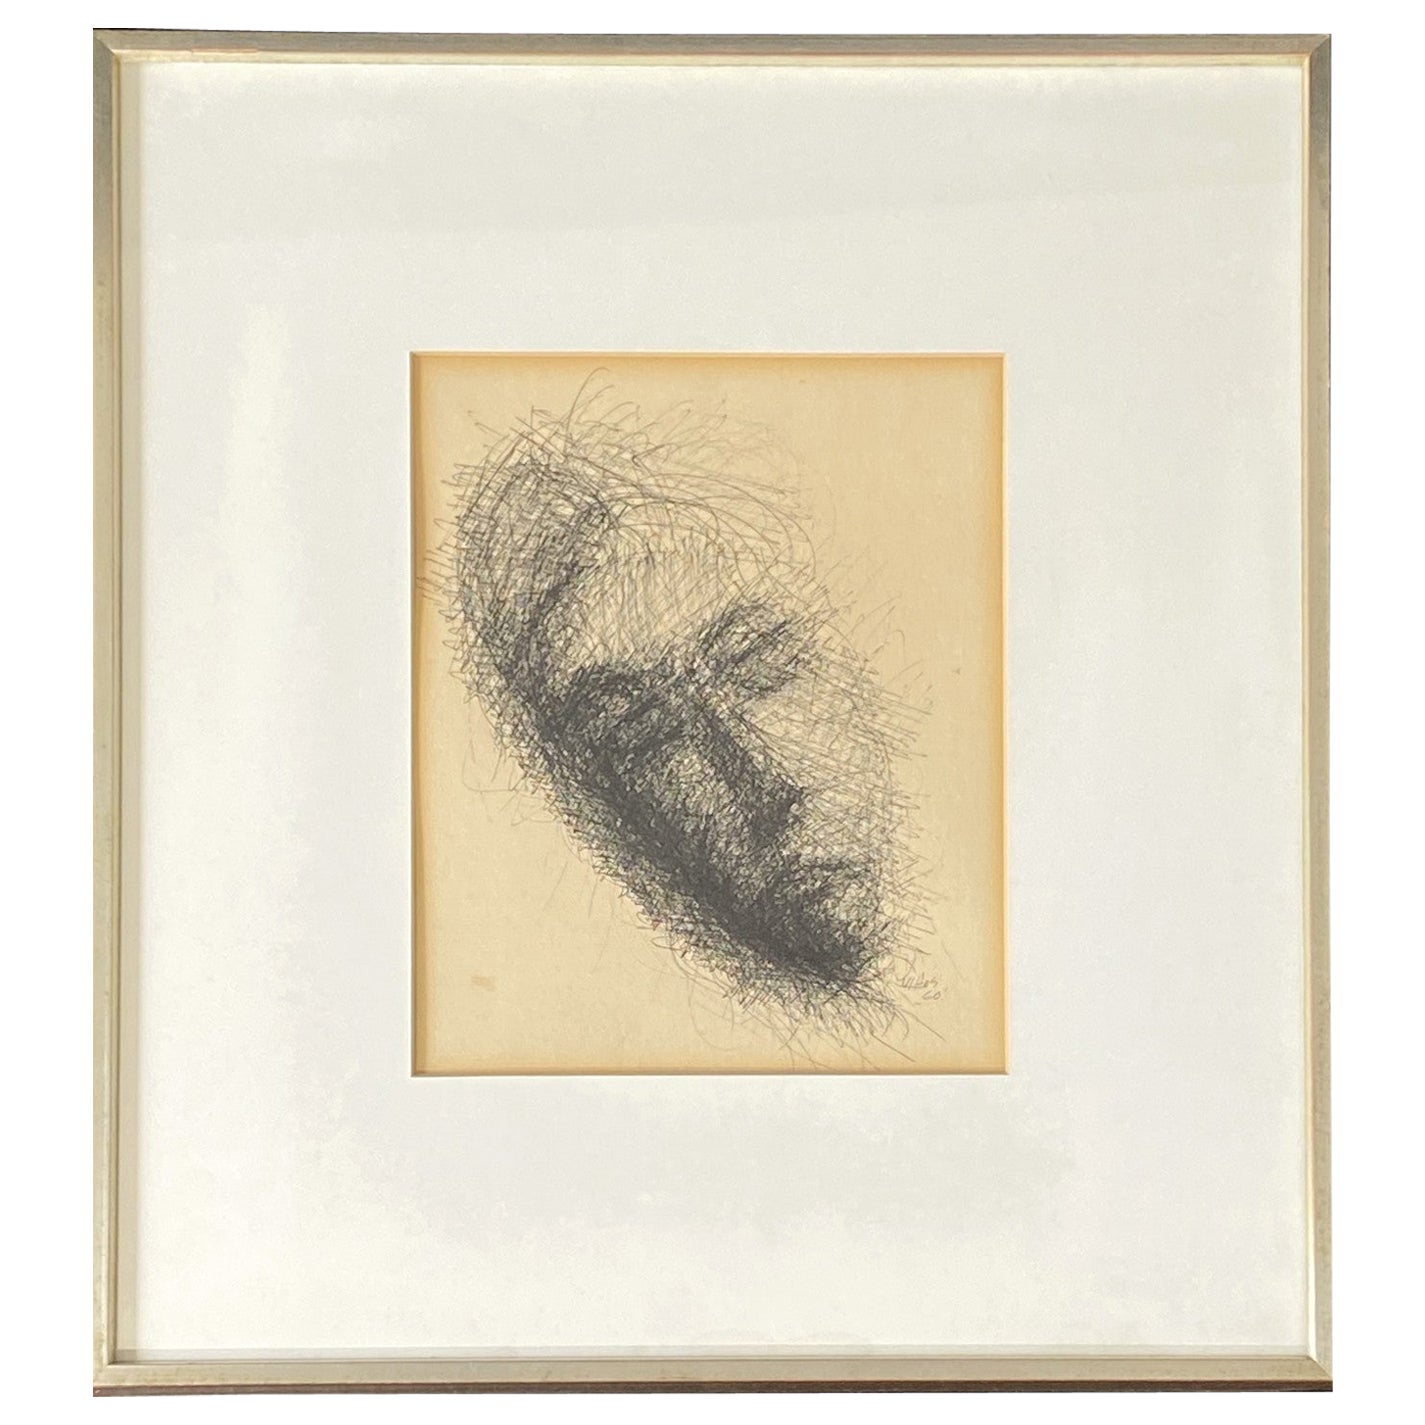 Mid-Century Modern Framed Original Ink Drawing Signed George Vihos 60s Portrait